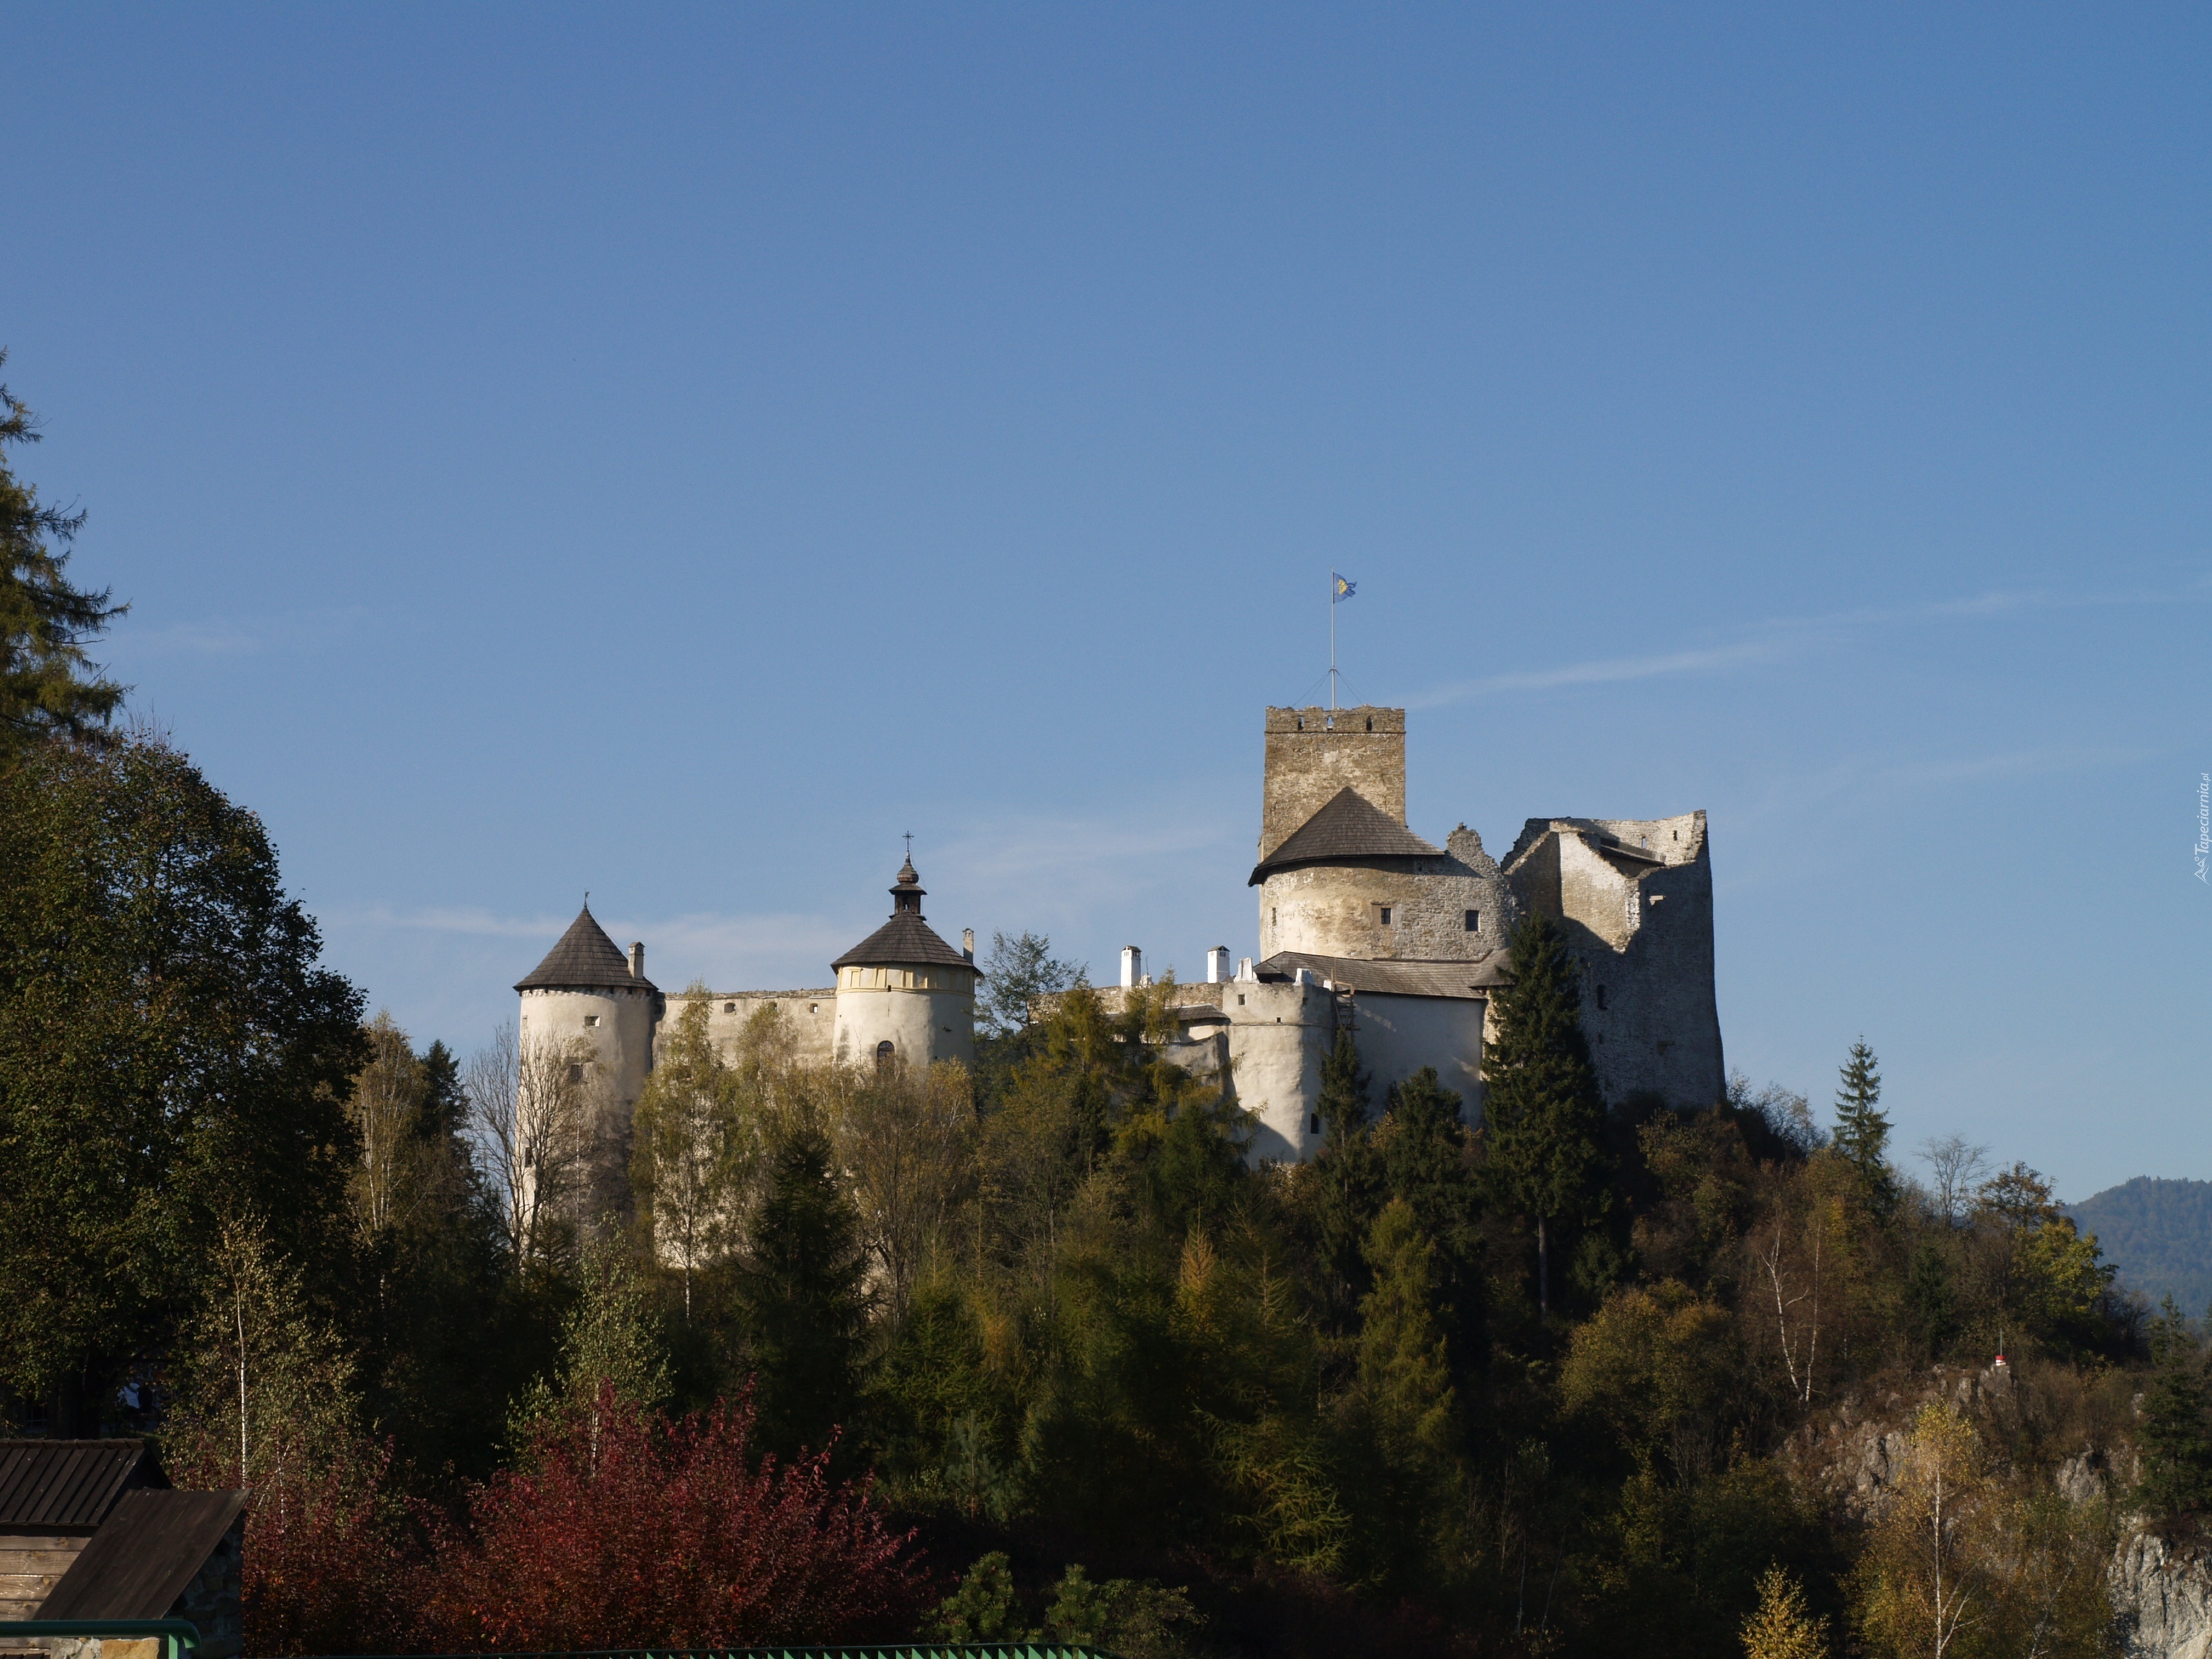 Zamek w Niedzicy, Zamek Dunajec, Wieś Niedzica, Polska